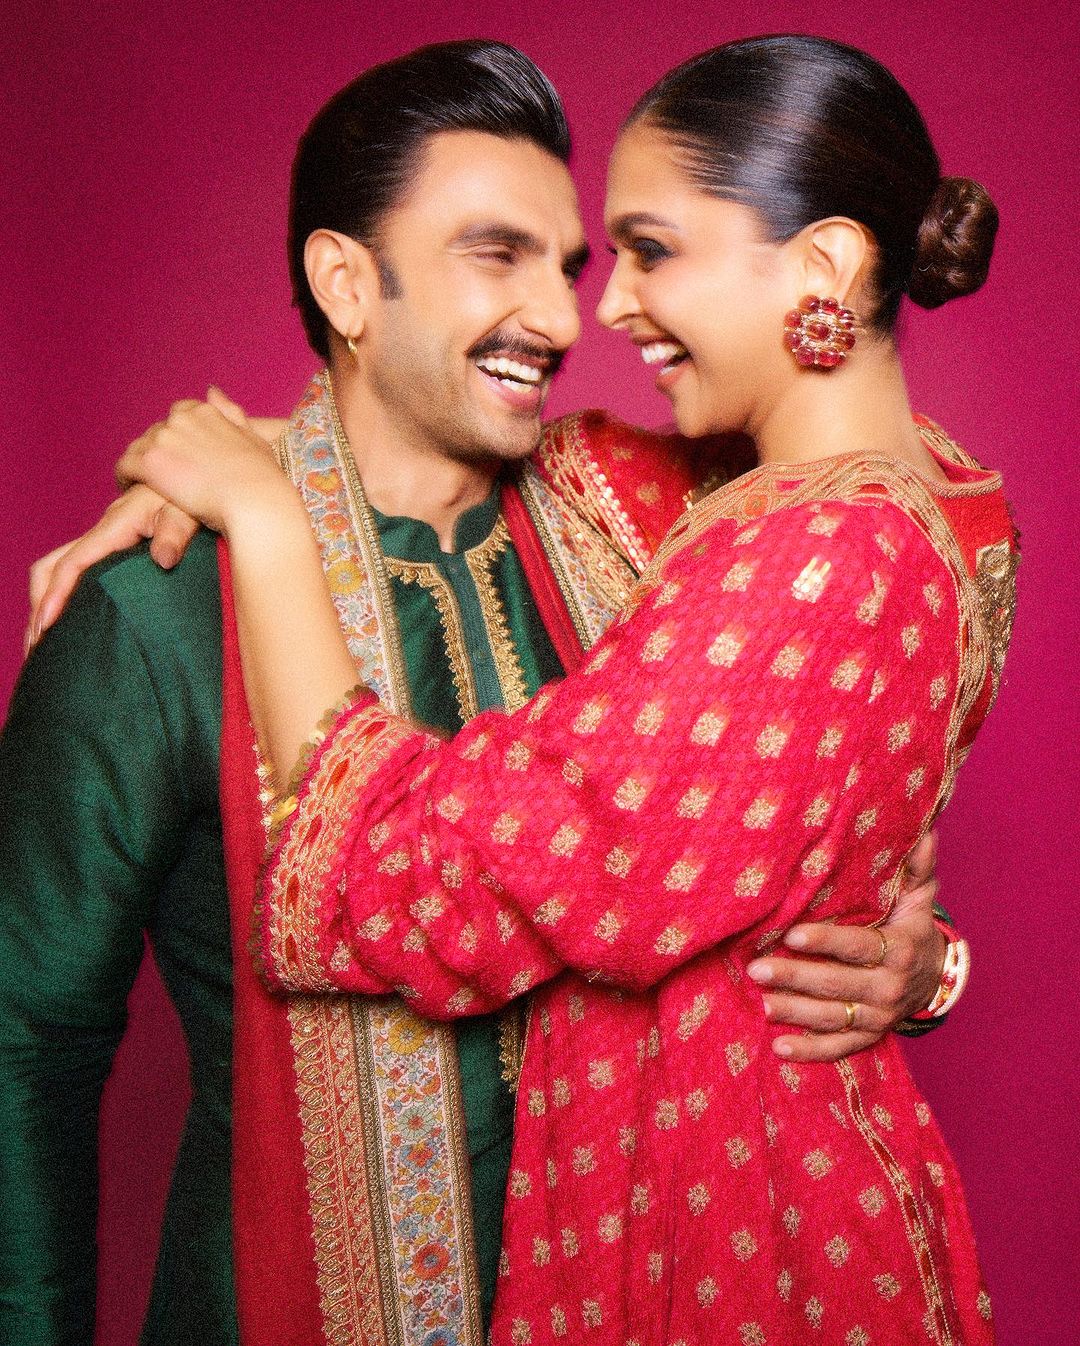 Ranveer Singh and Deepika Padukone. (Photo Credit: deepikapadukone/Instagram)